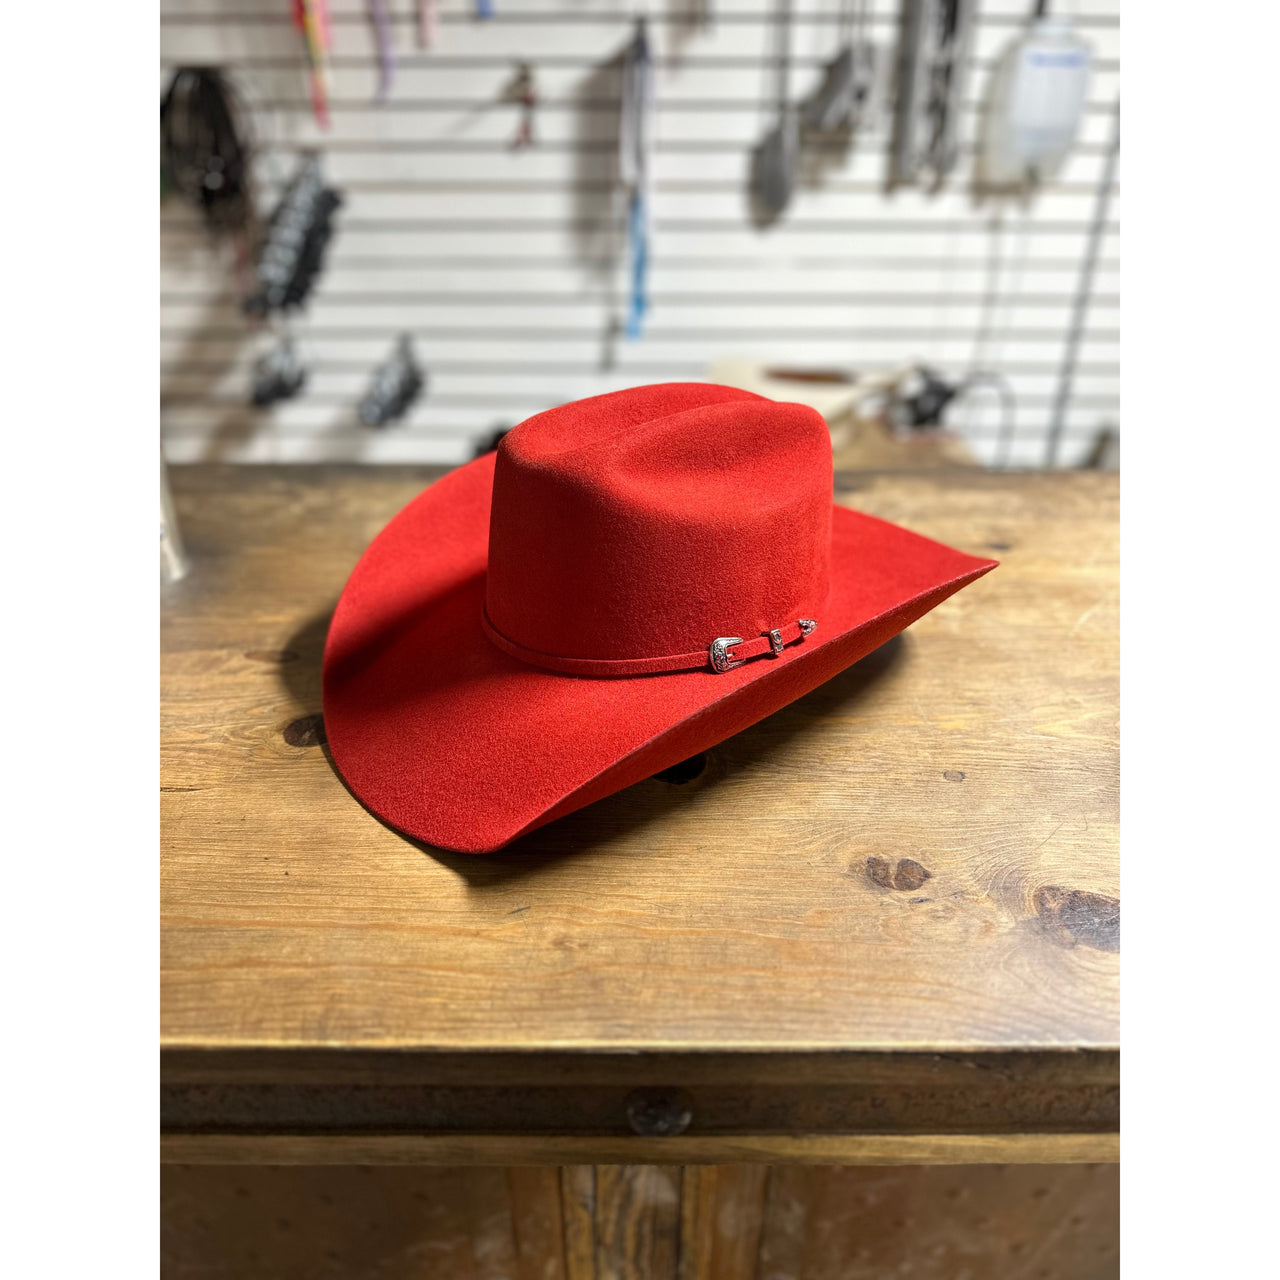 Prohat  Wool Felt Precreased Stampede  Western Hat - Red